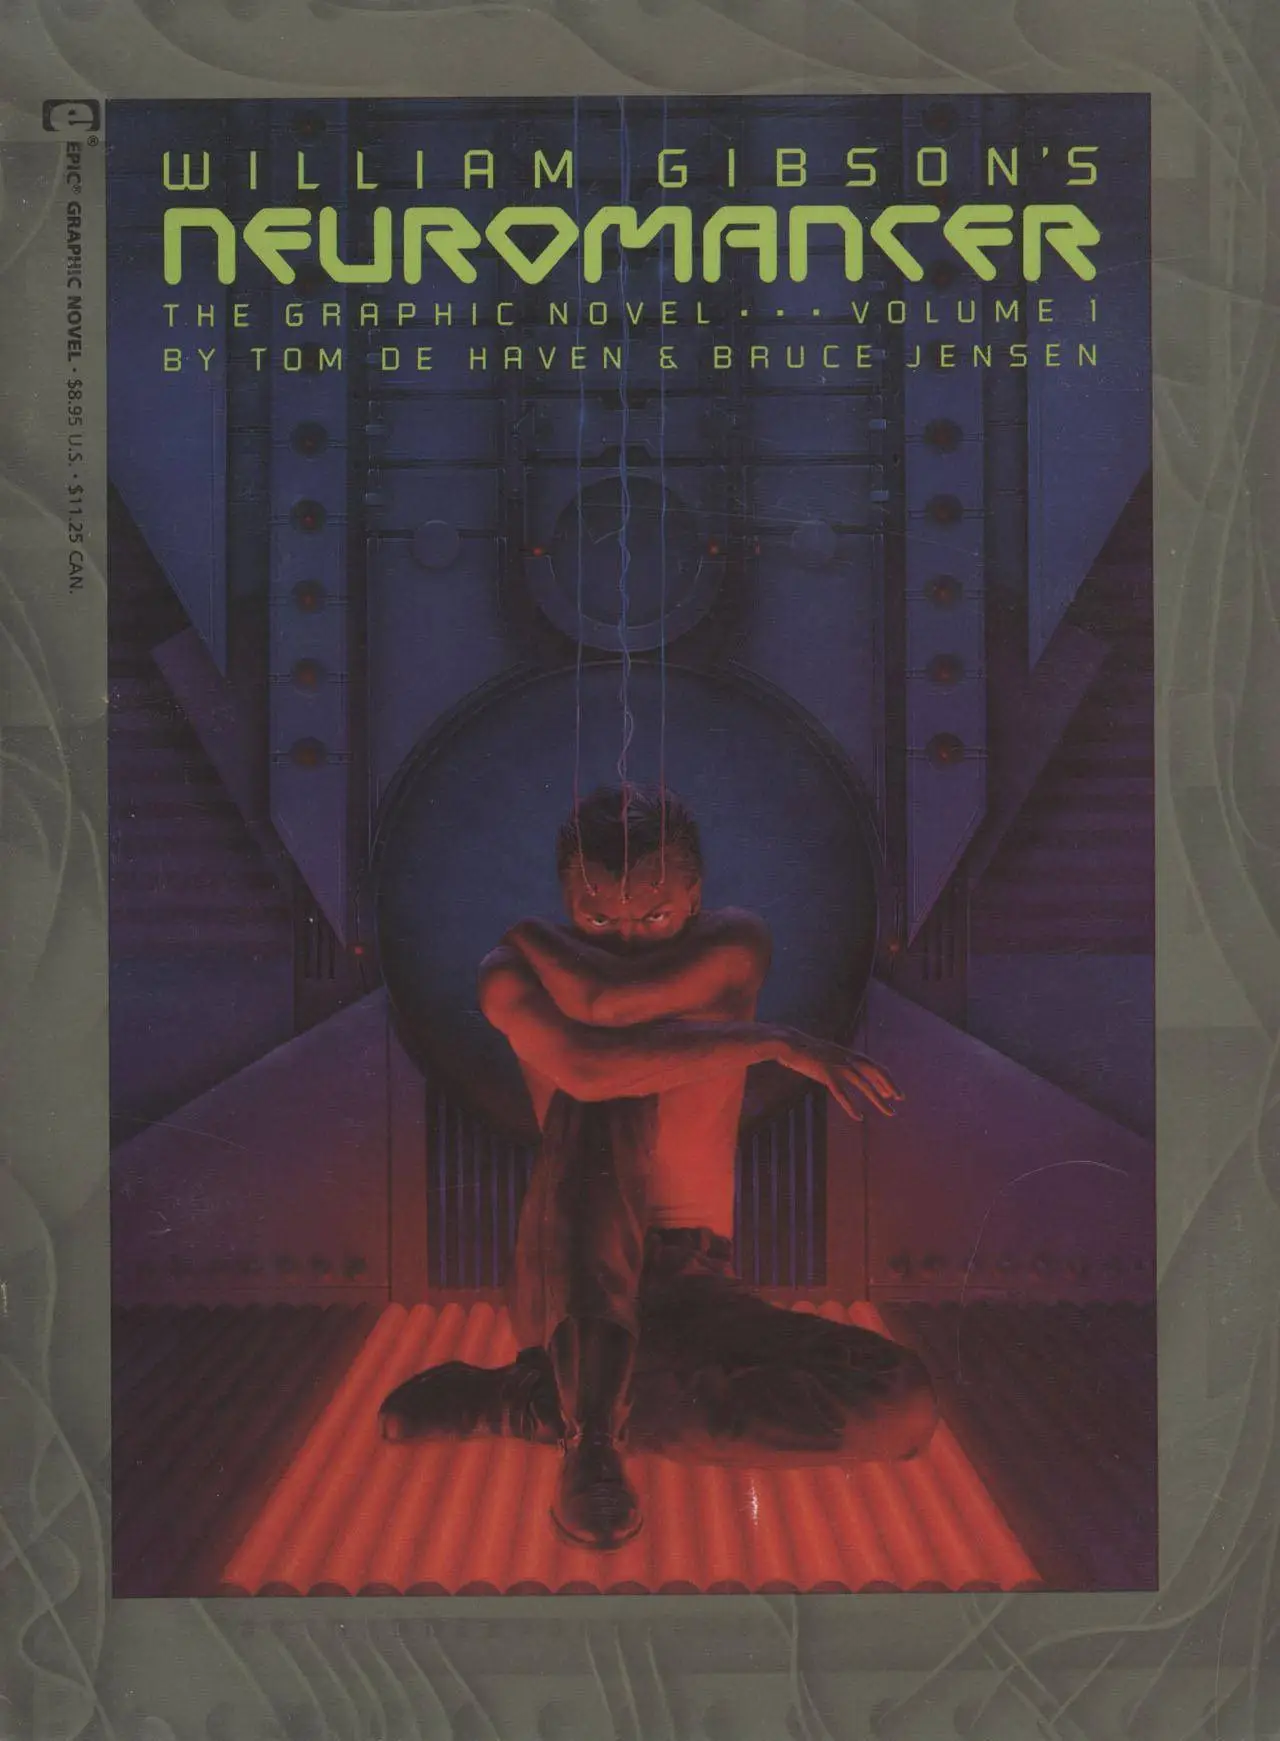 Marvel Graphic Novel 52 - Neuromancer 1989